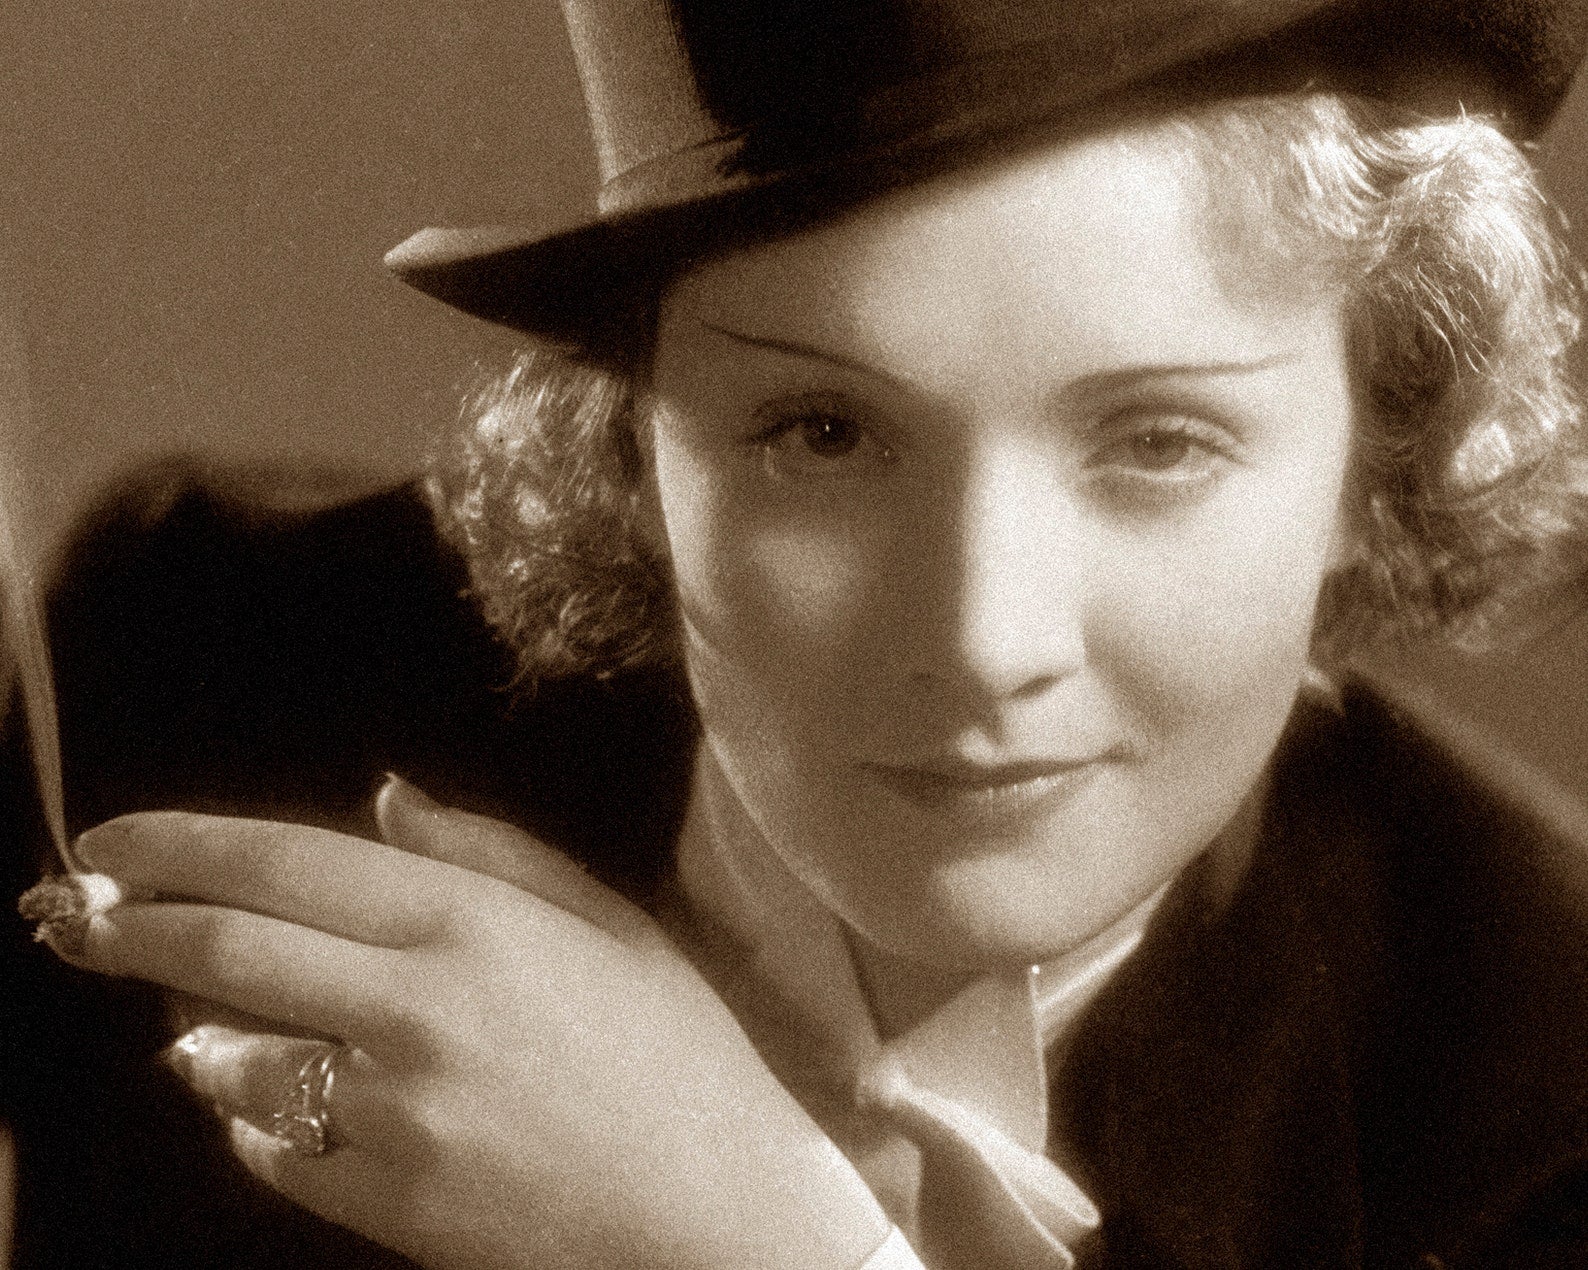 Marlene Dietrich "Morocco" (c.1930) - Publicity Still - Mabon Gallery